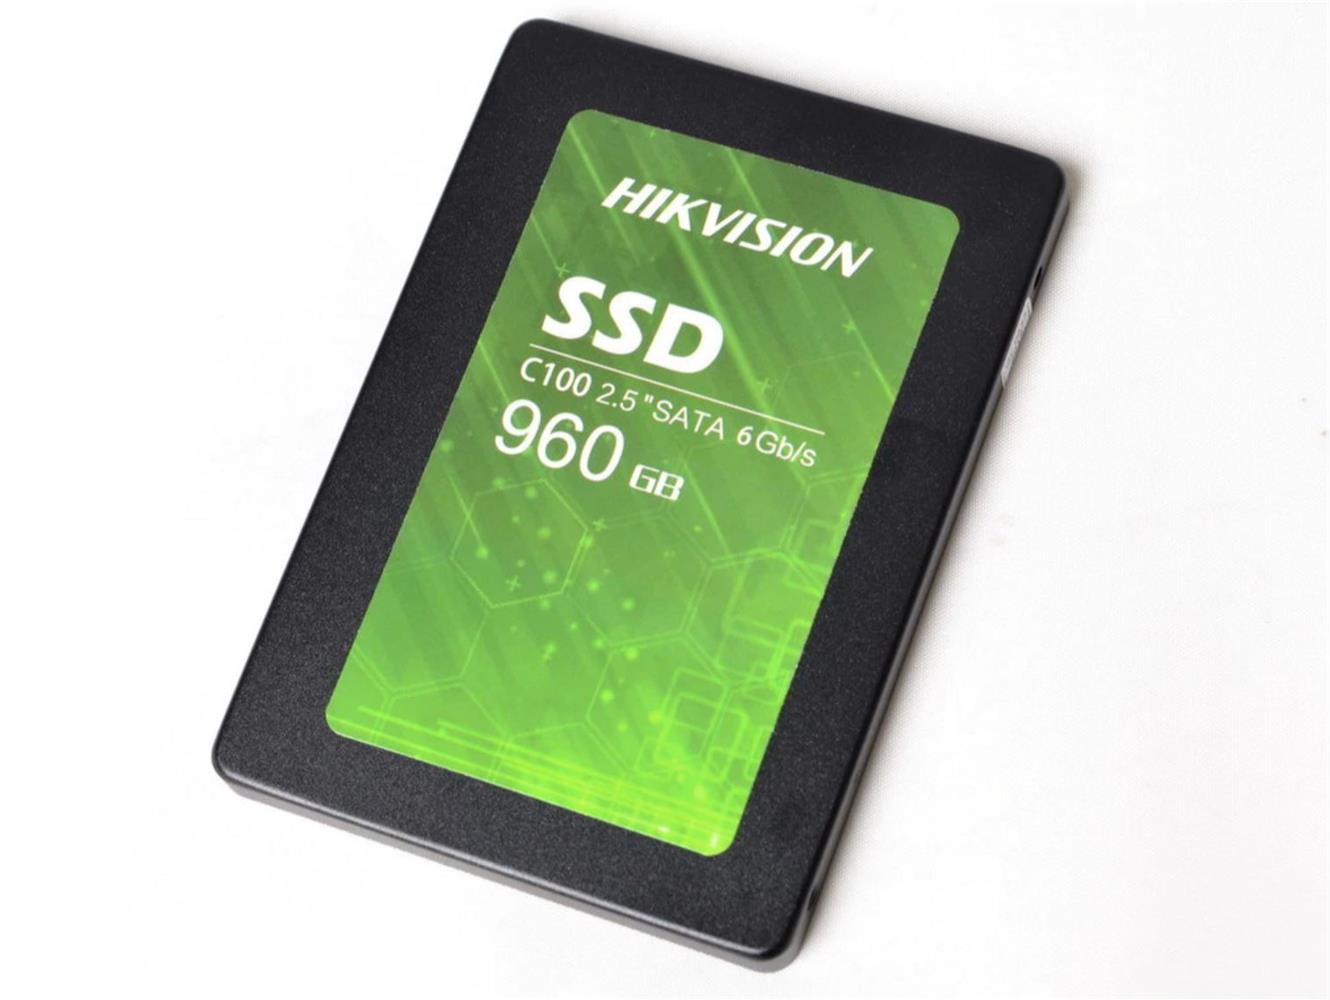 HIKVISION 960GB SSD DISK SATA 3 HS-SSD-C100-960G 560MB-500MB HARDDISK